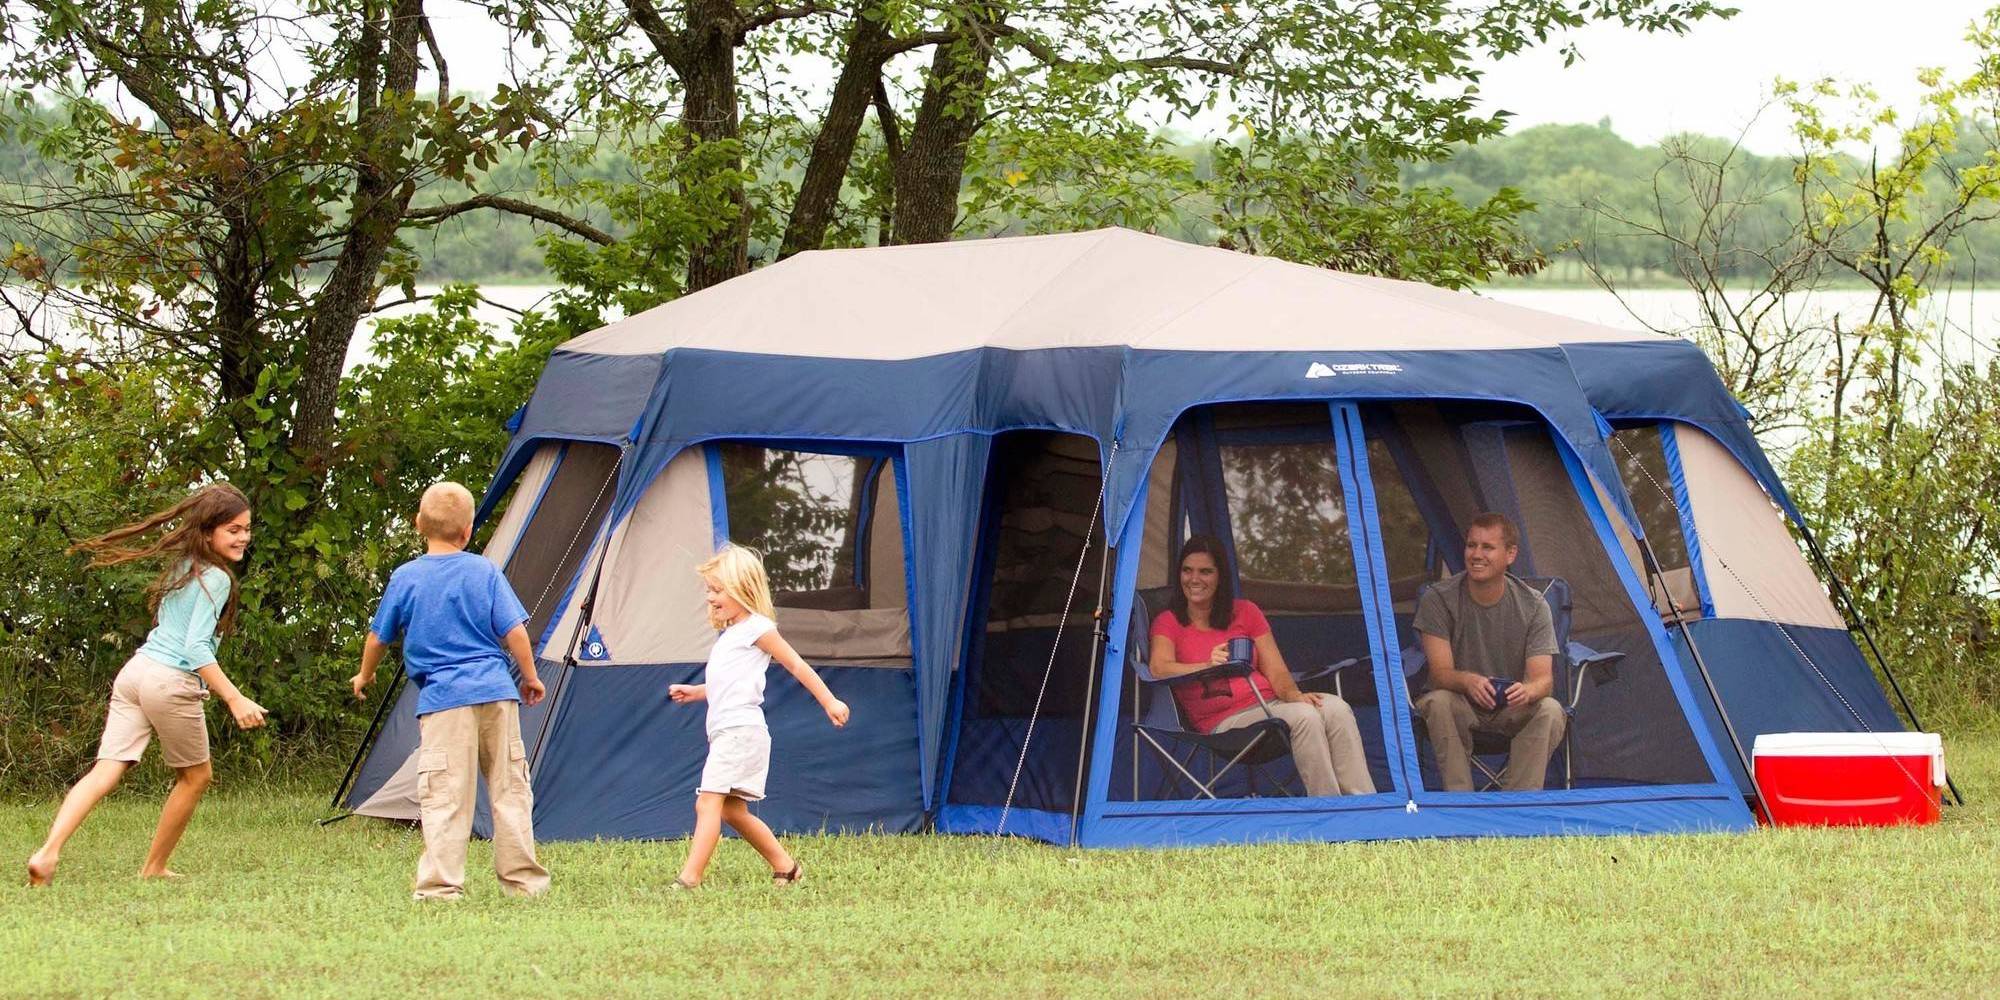 Mir camping палатка. Палатка мир кемпинг 2022. Дружная семья палатка. Аура Камп 29. Crazy Family Camper.